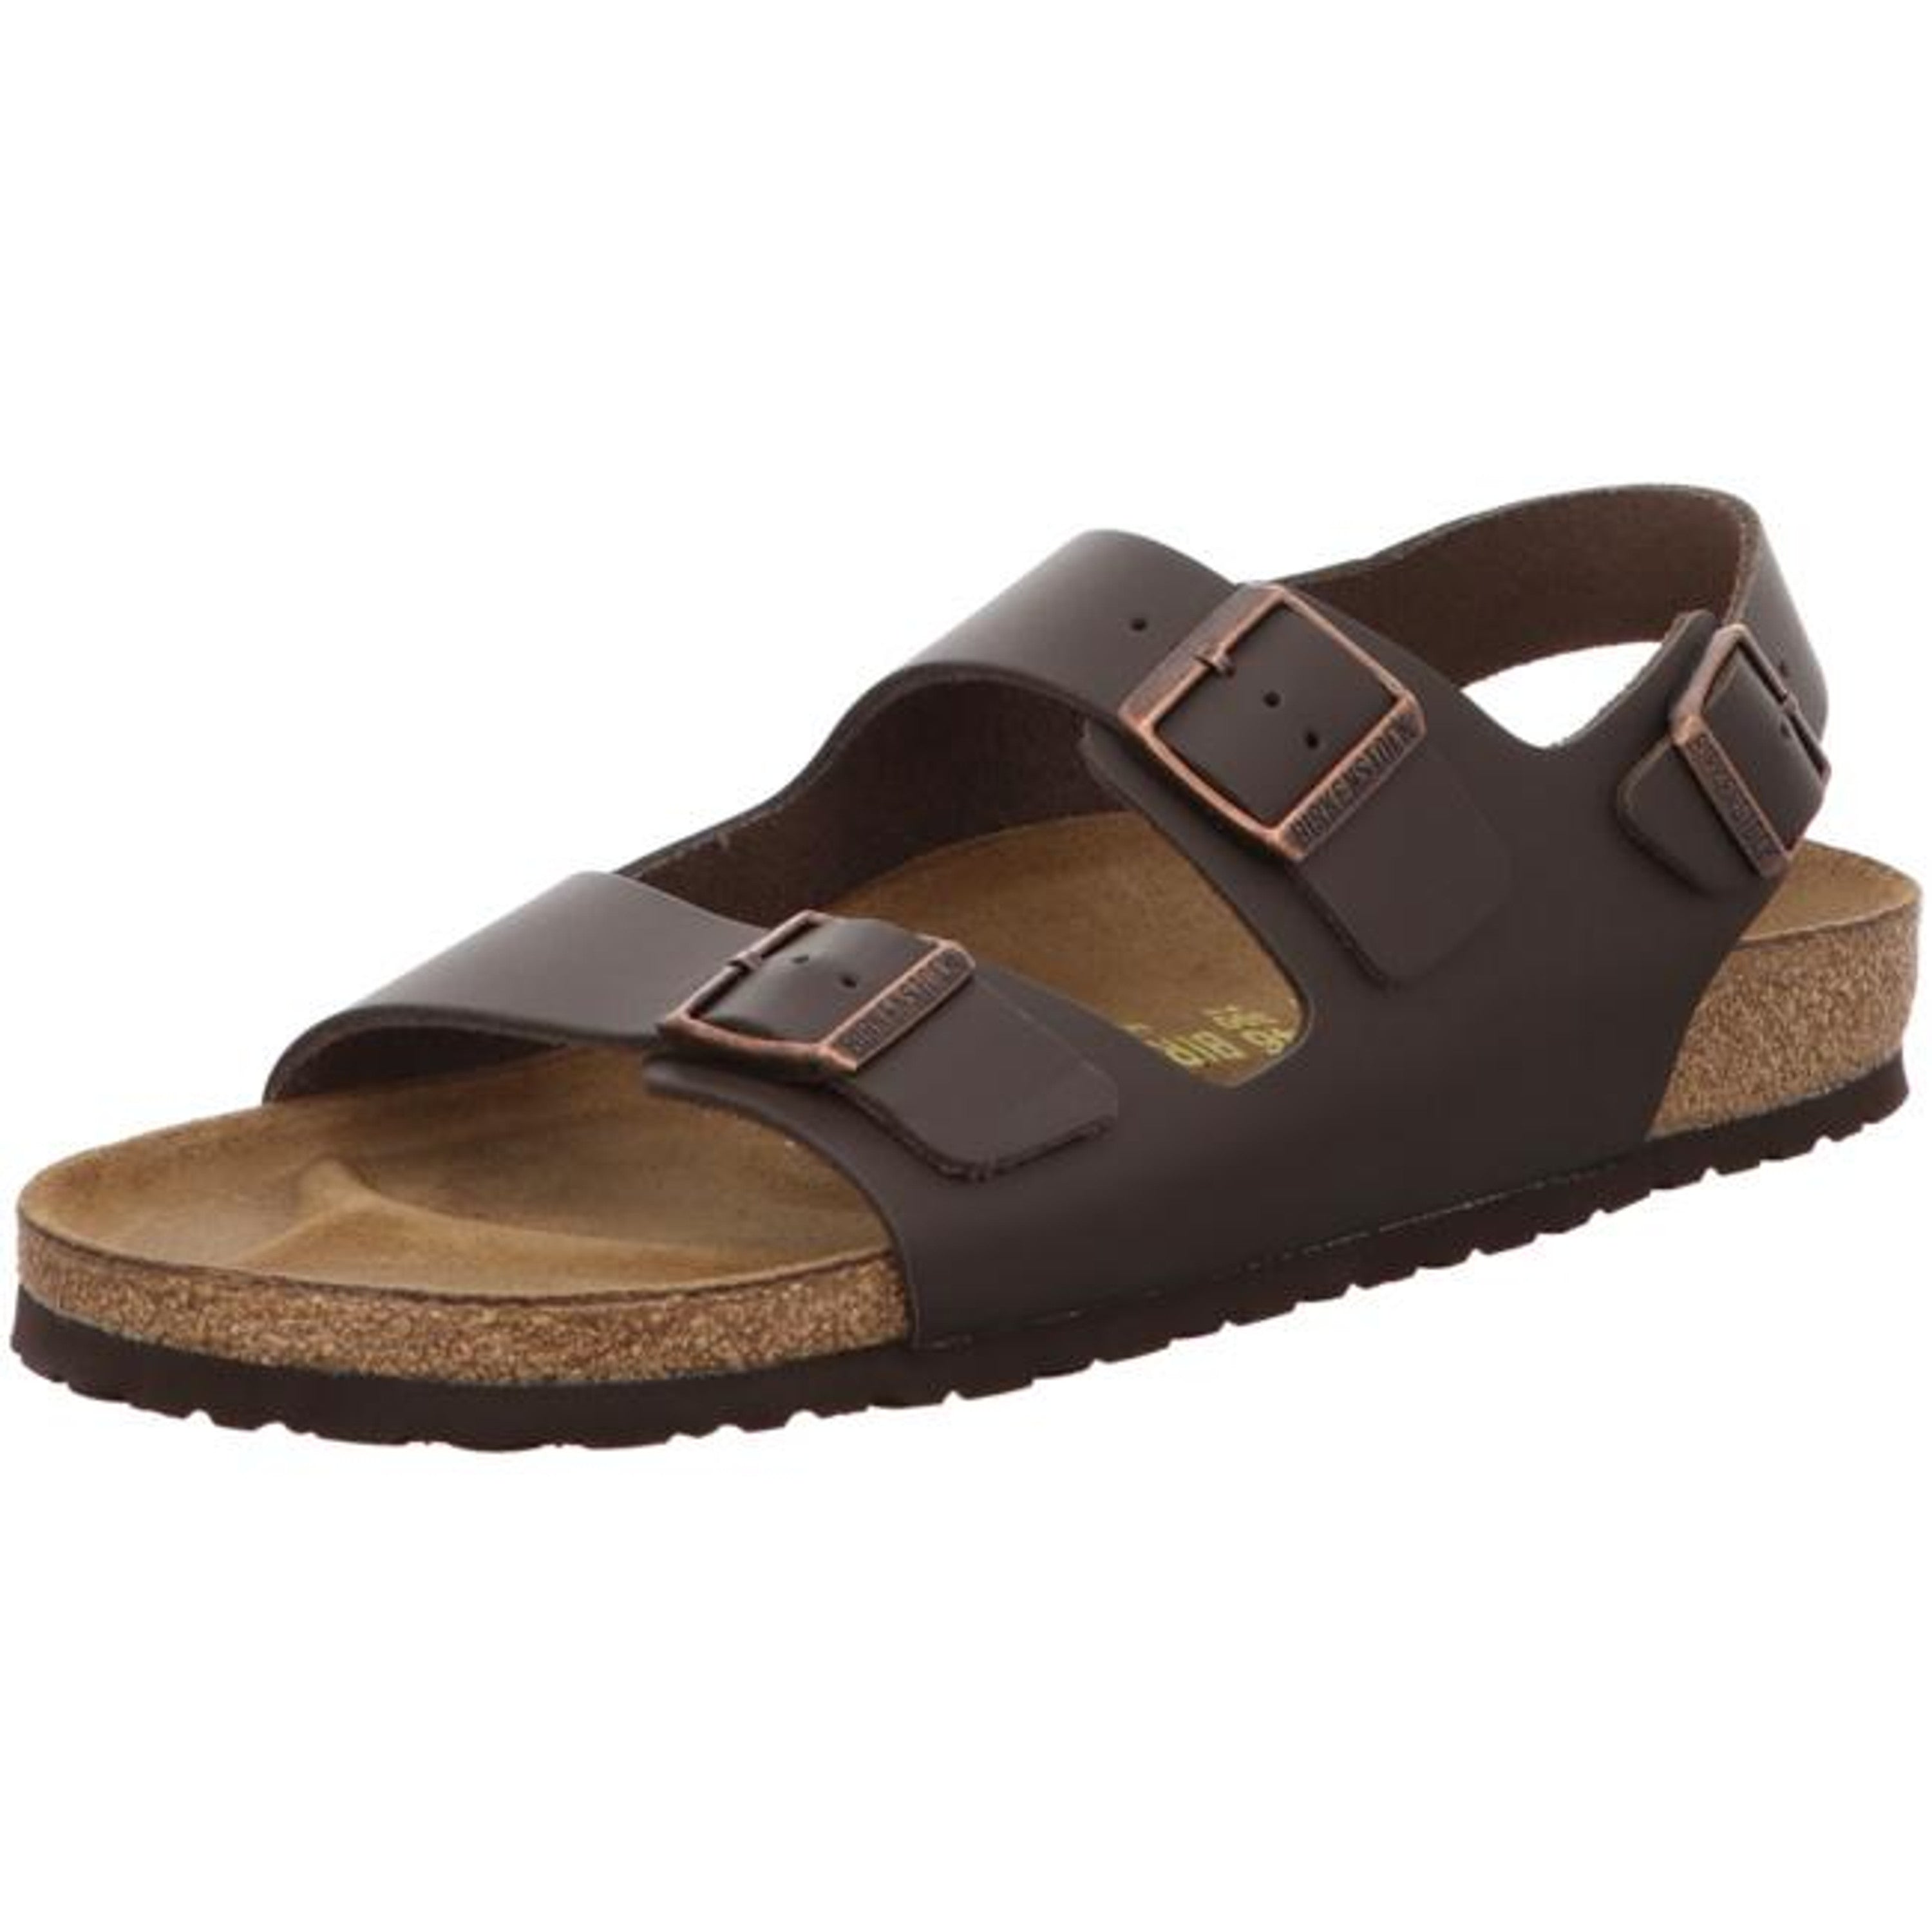 Birkenstock Milano Leather Slides Sandals Slippers Slingback Ankle Strap Darkbrown narrow - Bartel-Shop